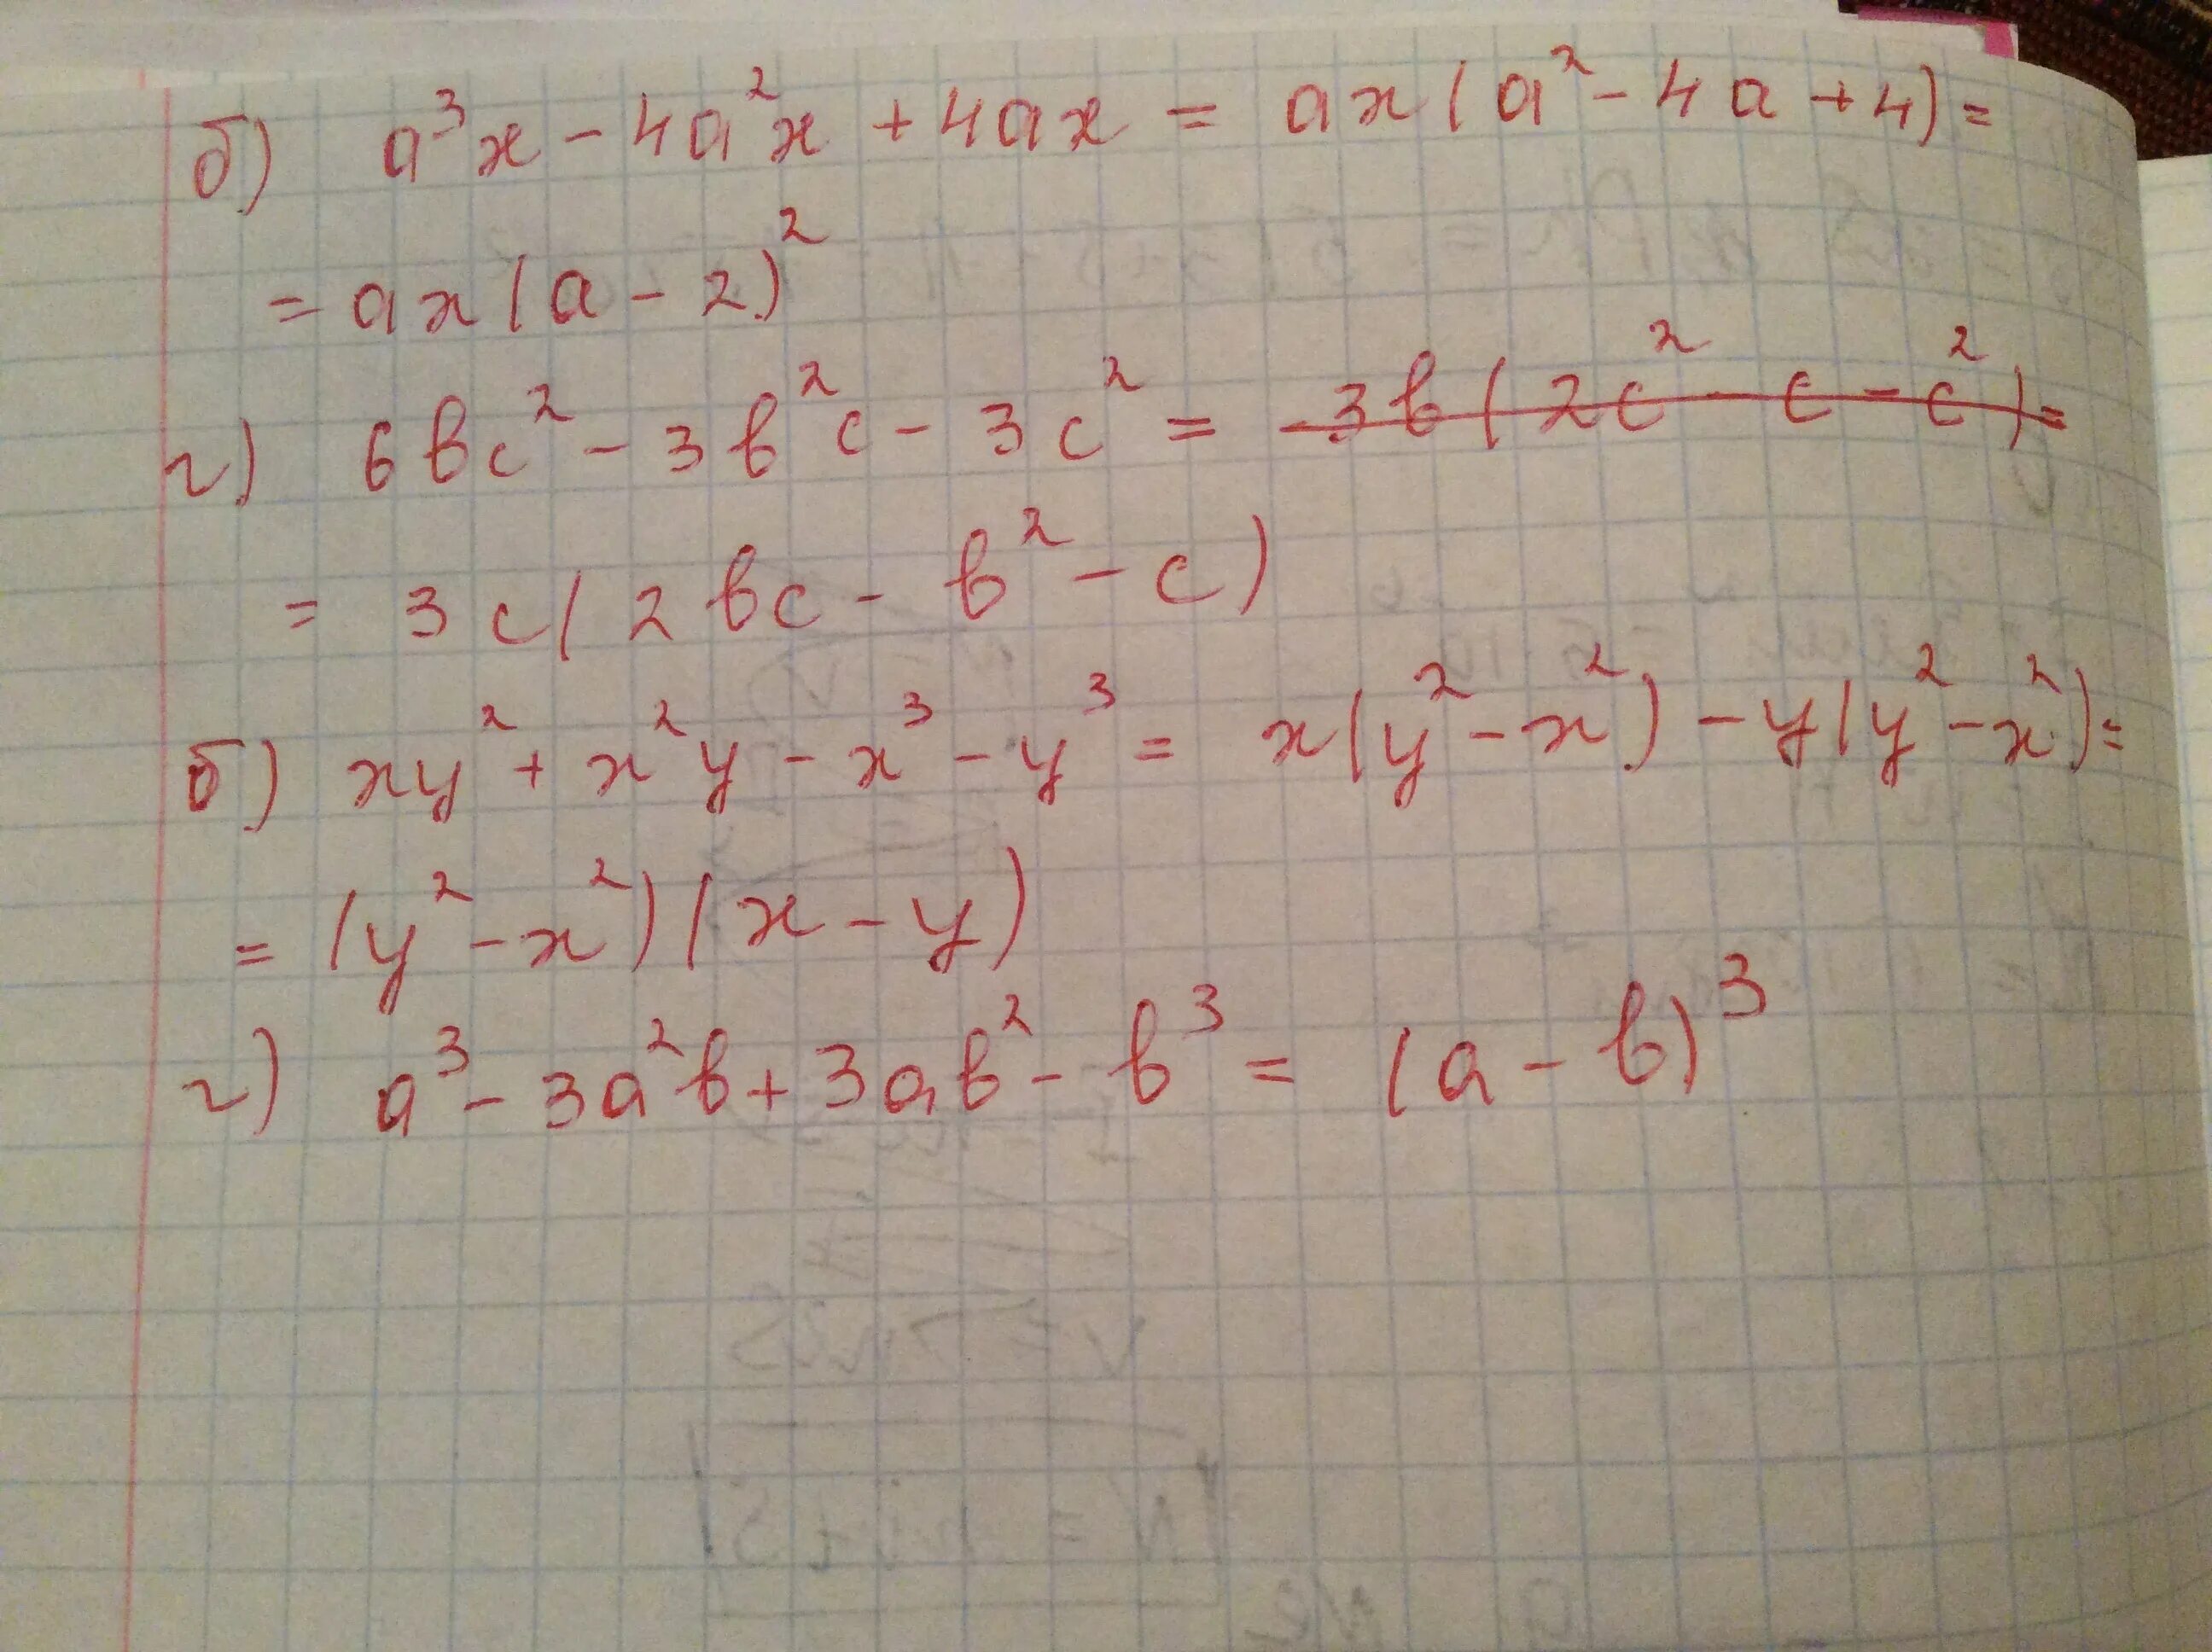 A*B*C 3x2y -0,5x3y2 2xy4. 2x^2-8 б 3/х-2. A2 4a 2 x2 AX 6 X три решения. Система x + 2y=1 x2 -XY-2x2=1. A 4 x4 2ax2 a 30 0